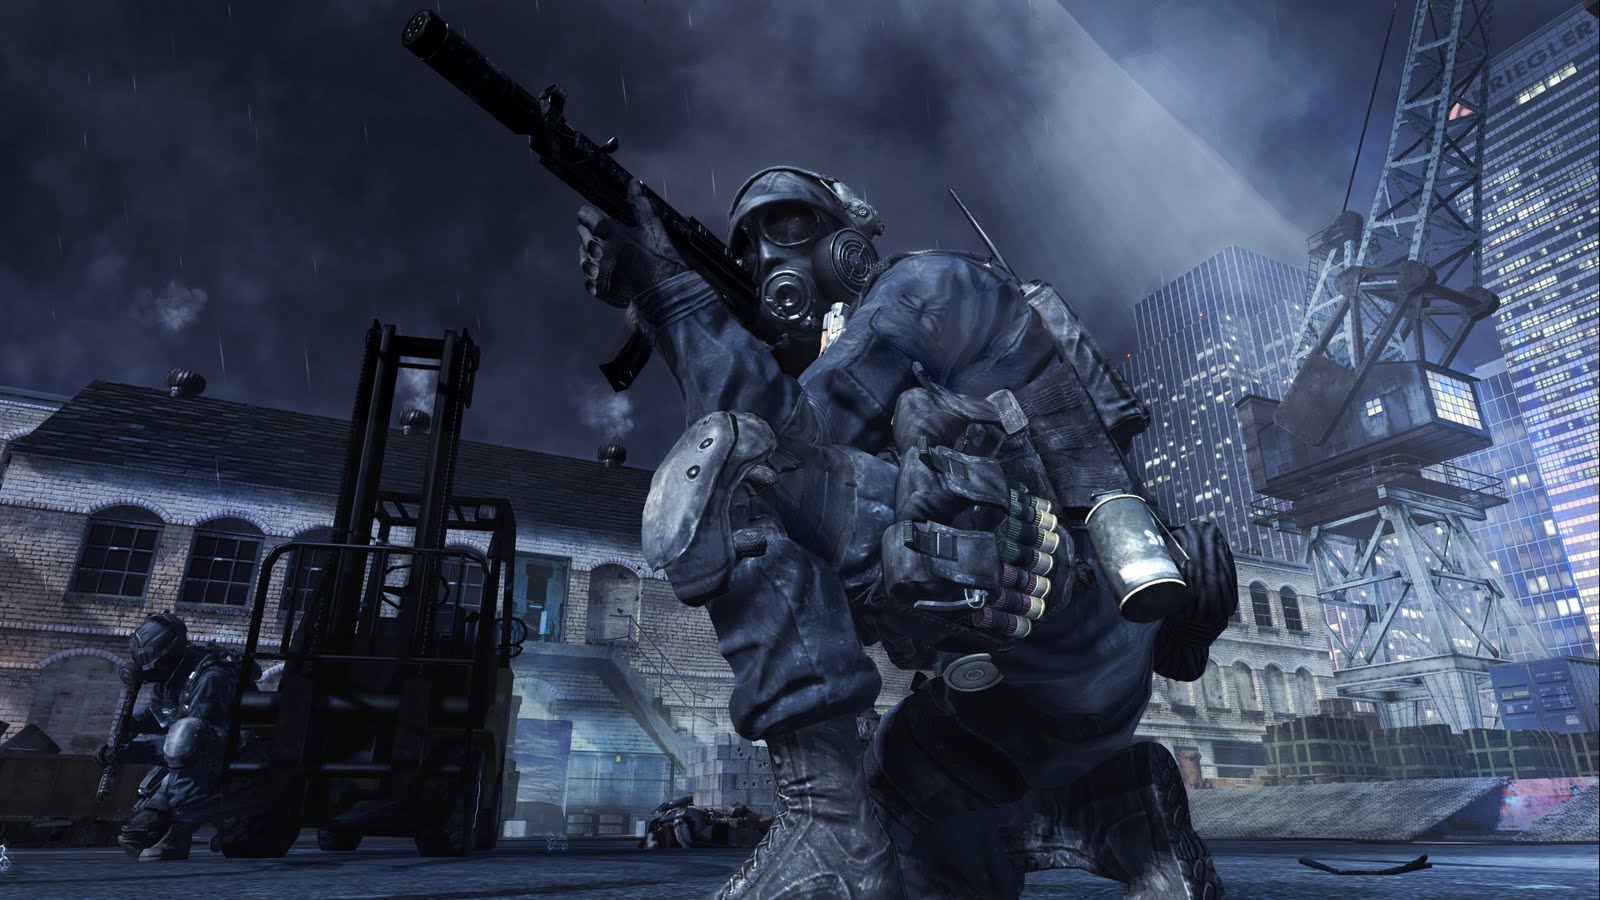  النسخة الكاملة Call Of Duty modern warfare 3  Call+of+Duty+Modern+Warfare+3+official+screenshots%25283%2529